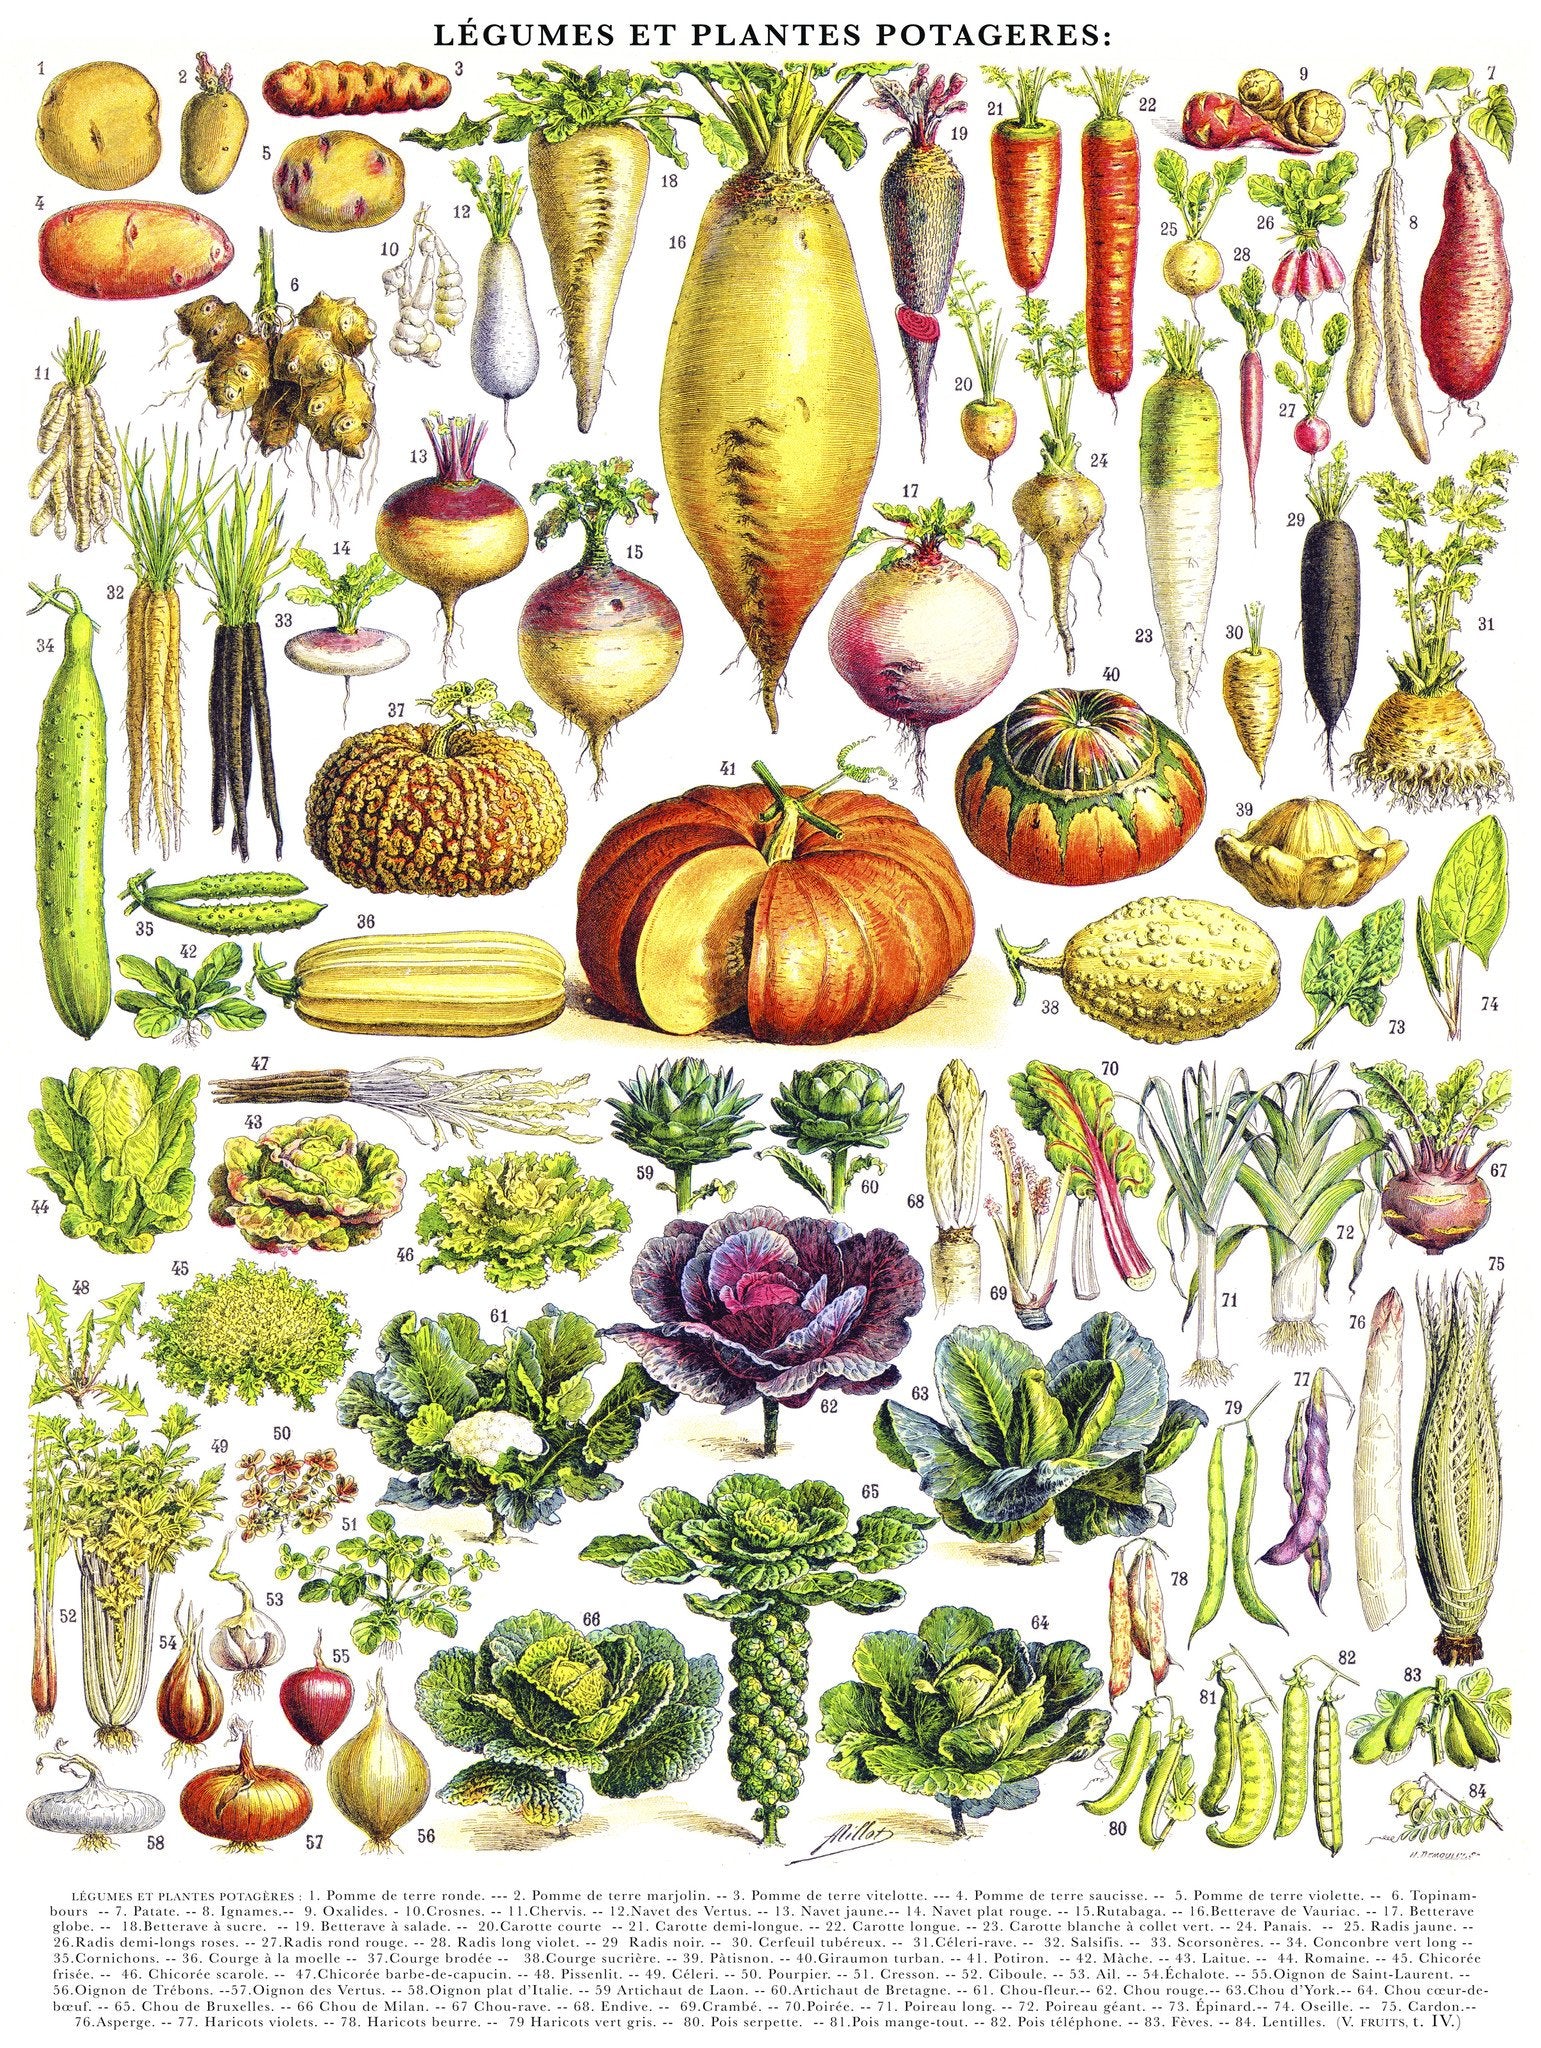  1000 piece Vegetable puzzle detail